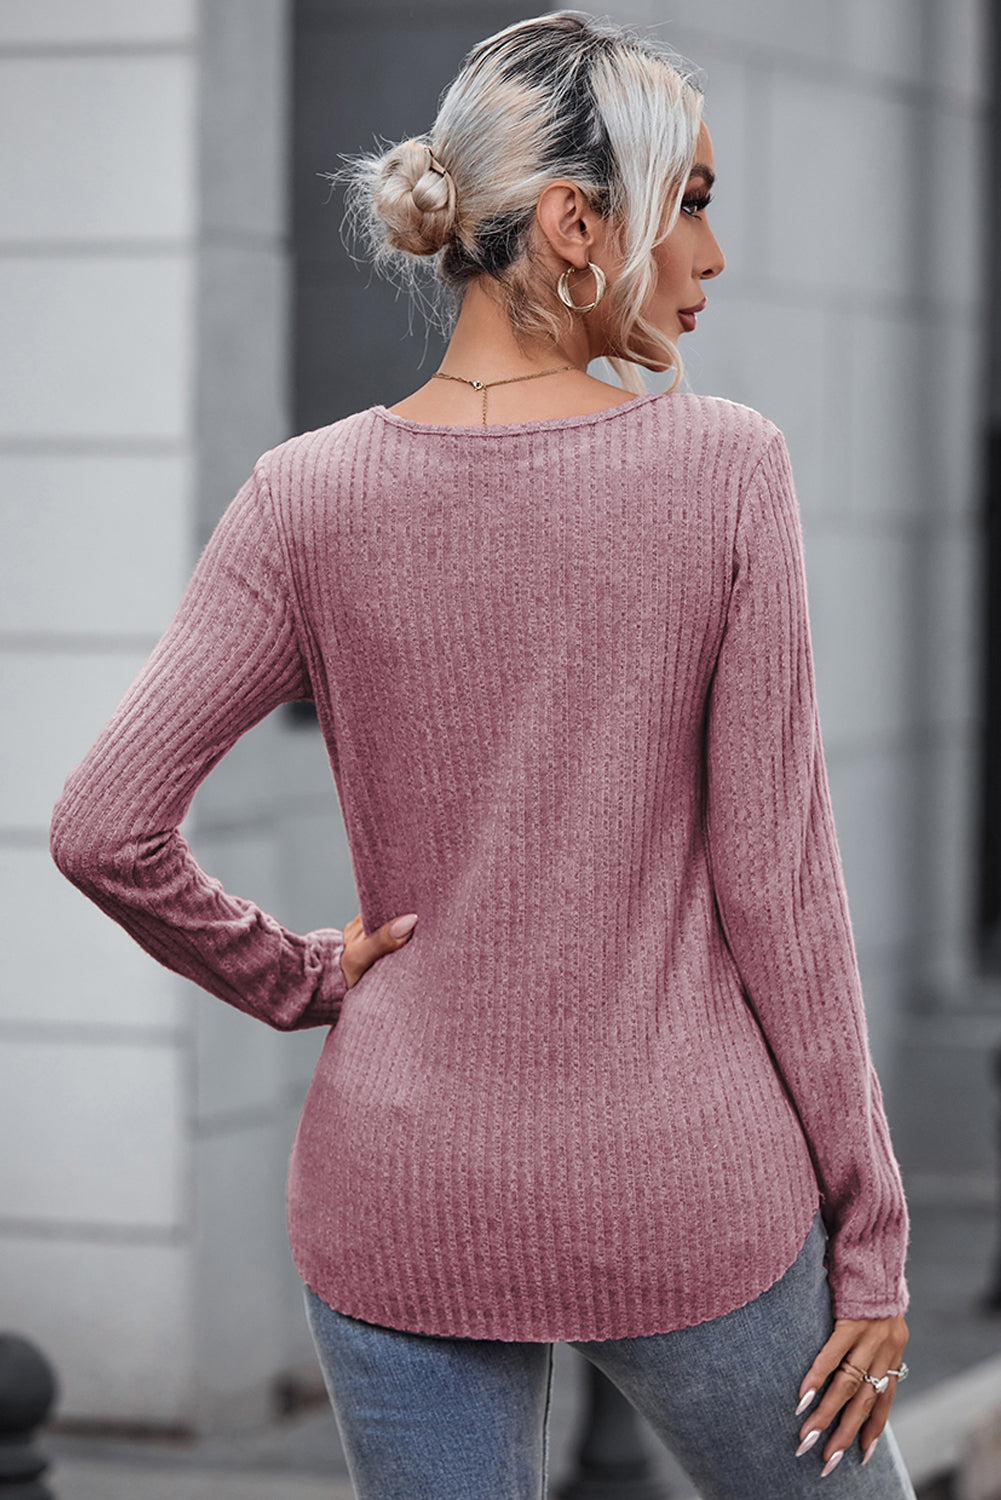 Rožnat rebrast pleten pulover s čipkastimi našitki na ramenih za prosti čas